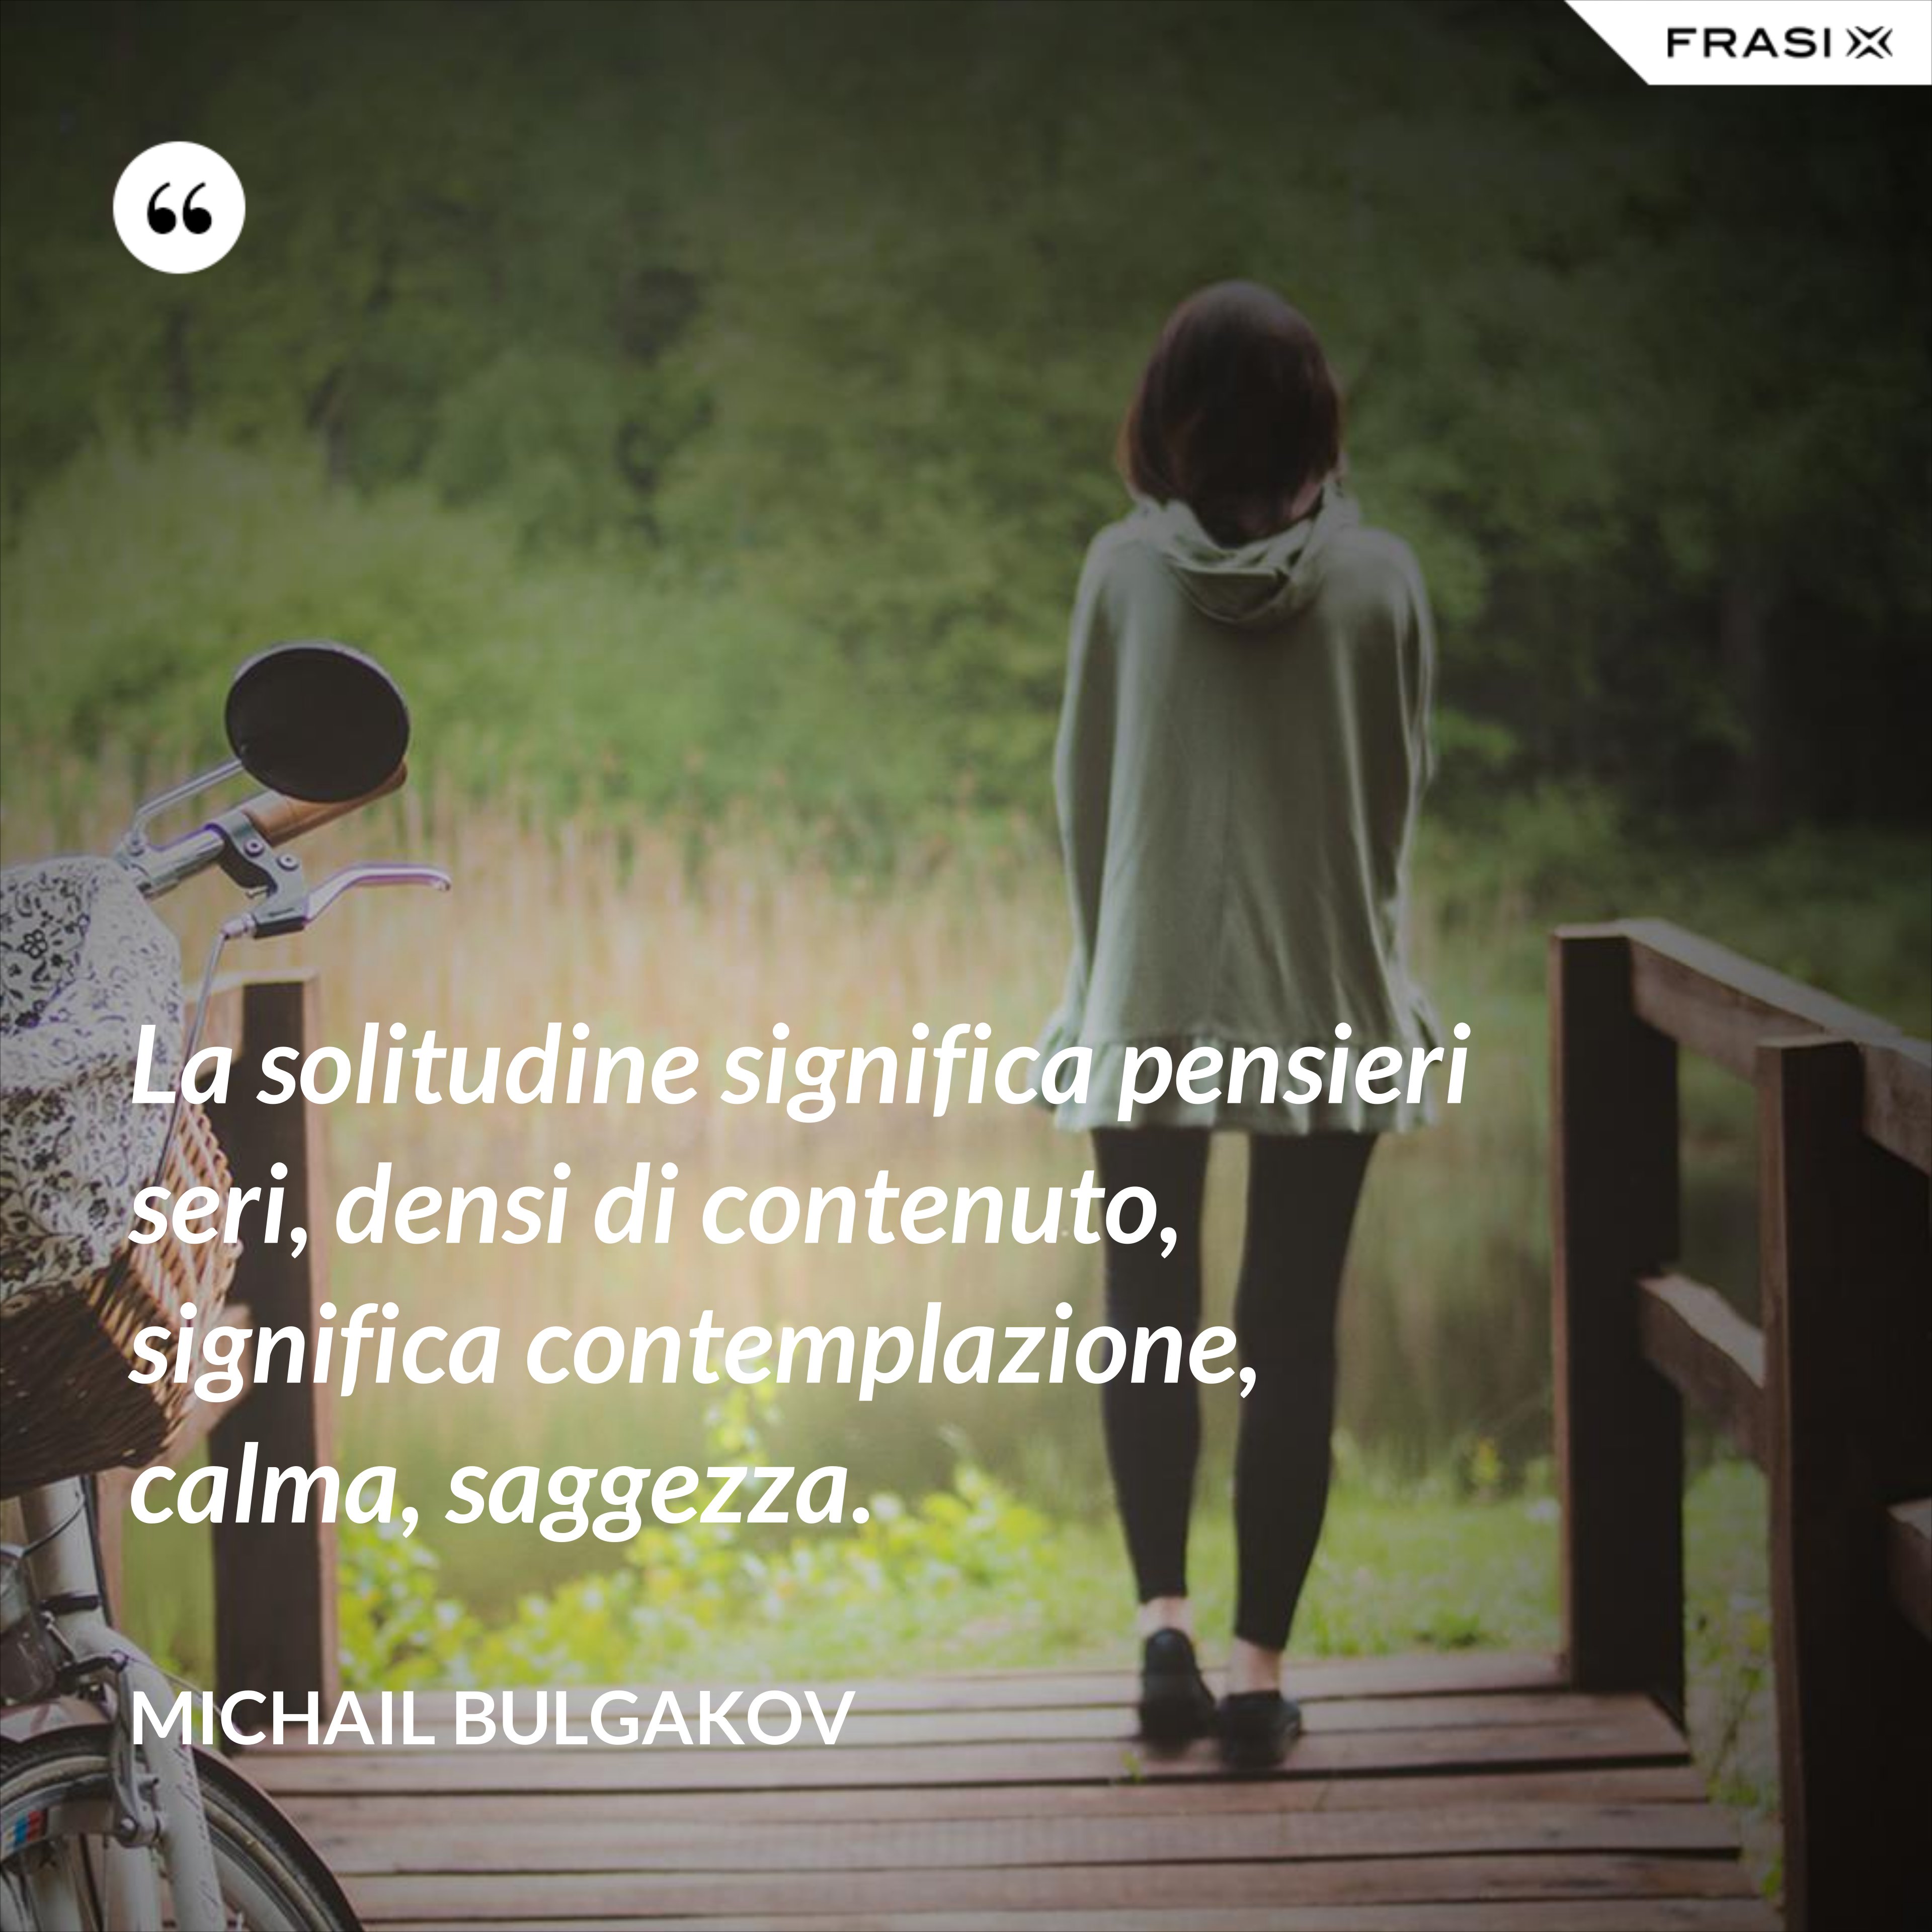 La solitudine significa pensieri seri, densi di contenuto, significa contemplazione, calma, saggezza. - Michail Bulgakov